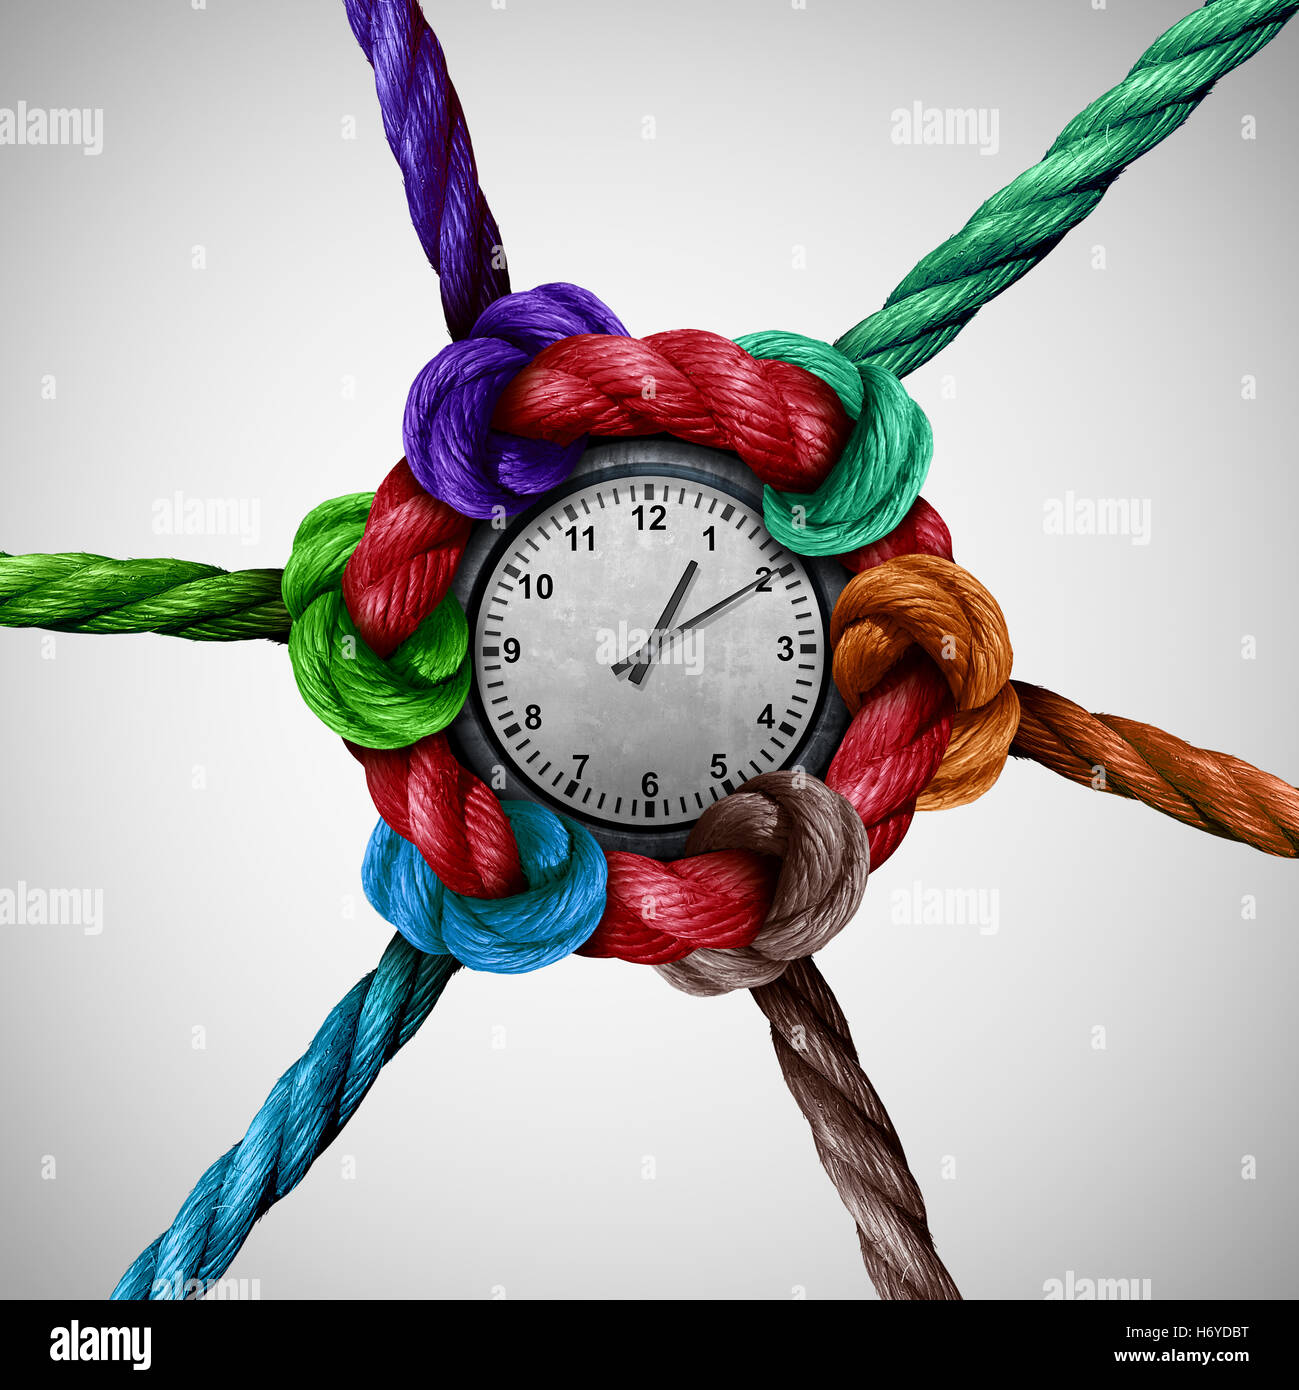 Nettwork temps travail social la coordination comme un groupe de cordes attachées et reliées à une horloge centrale comme une métaphore de l'organisation d'entreprise ou de l'événement avec l'icône de planification 3D illustration éléments. Banque D'Images